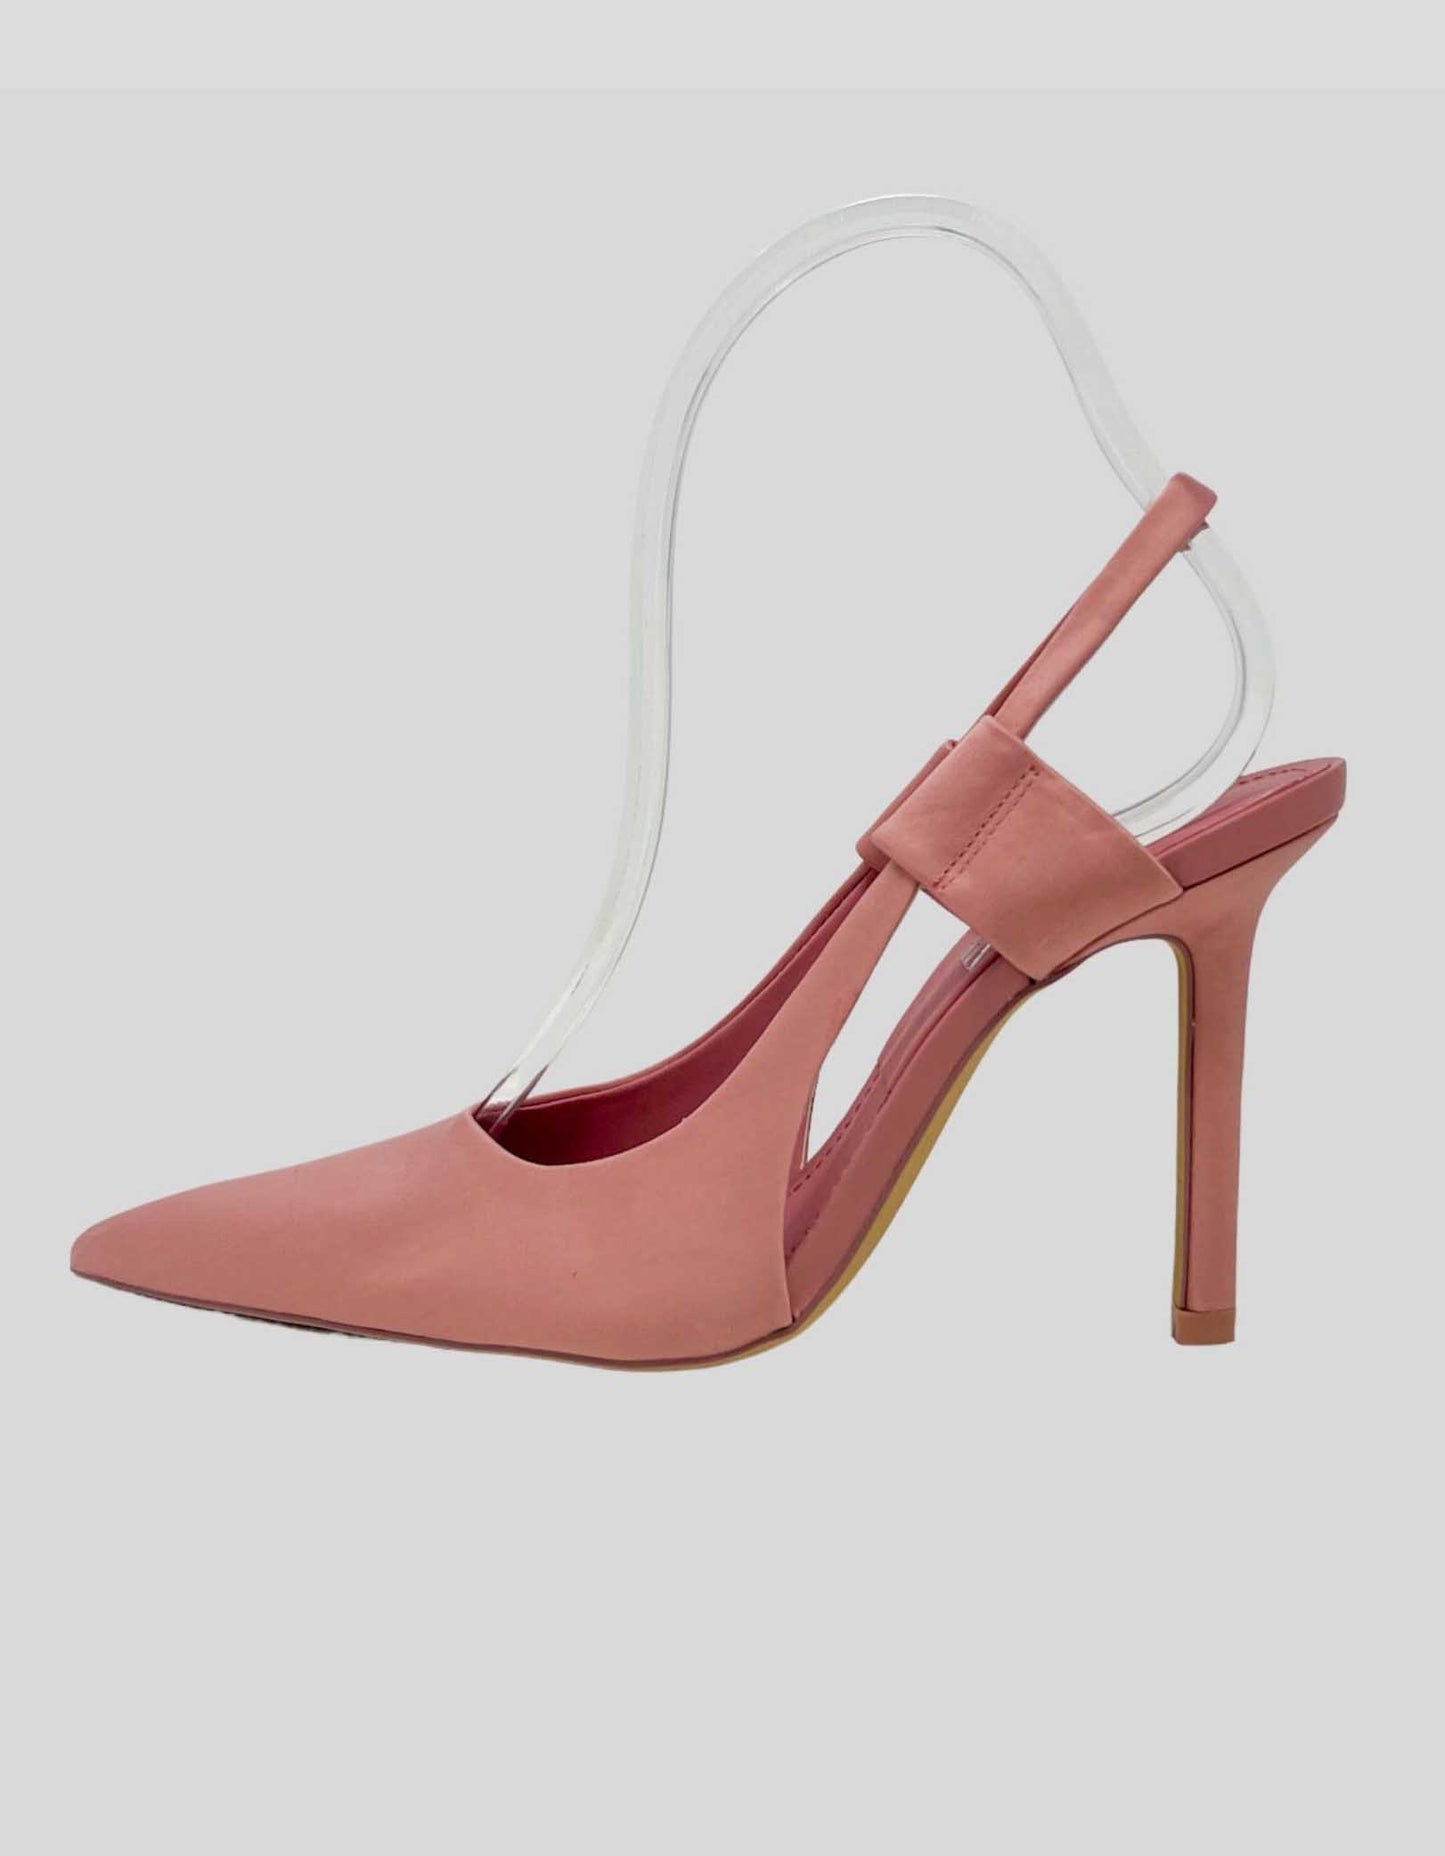 ZARA pink slingback pointed-toe heels - 38 IT | 8 US